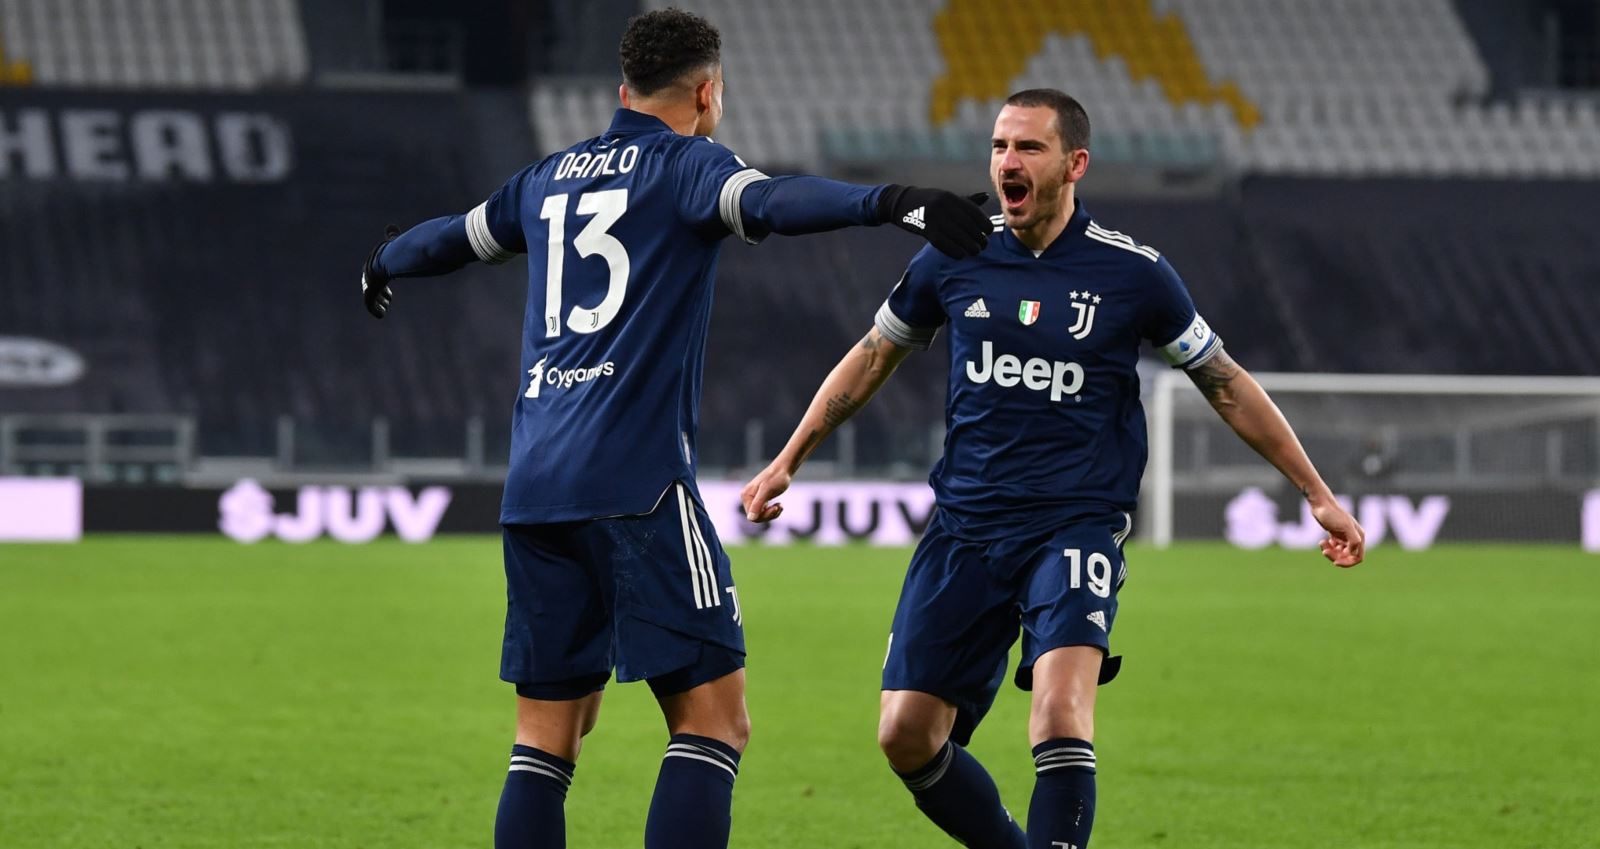 Juventus 3-1 Sassuolo, juventus, sassuolo, juve, trực tiếp bóng đá, bong da, serie a, lịch thi đấu, nhận định, kết quả bóng đá, kết quả juventus vs sassuolo